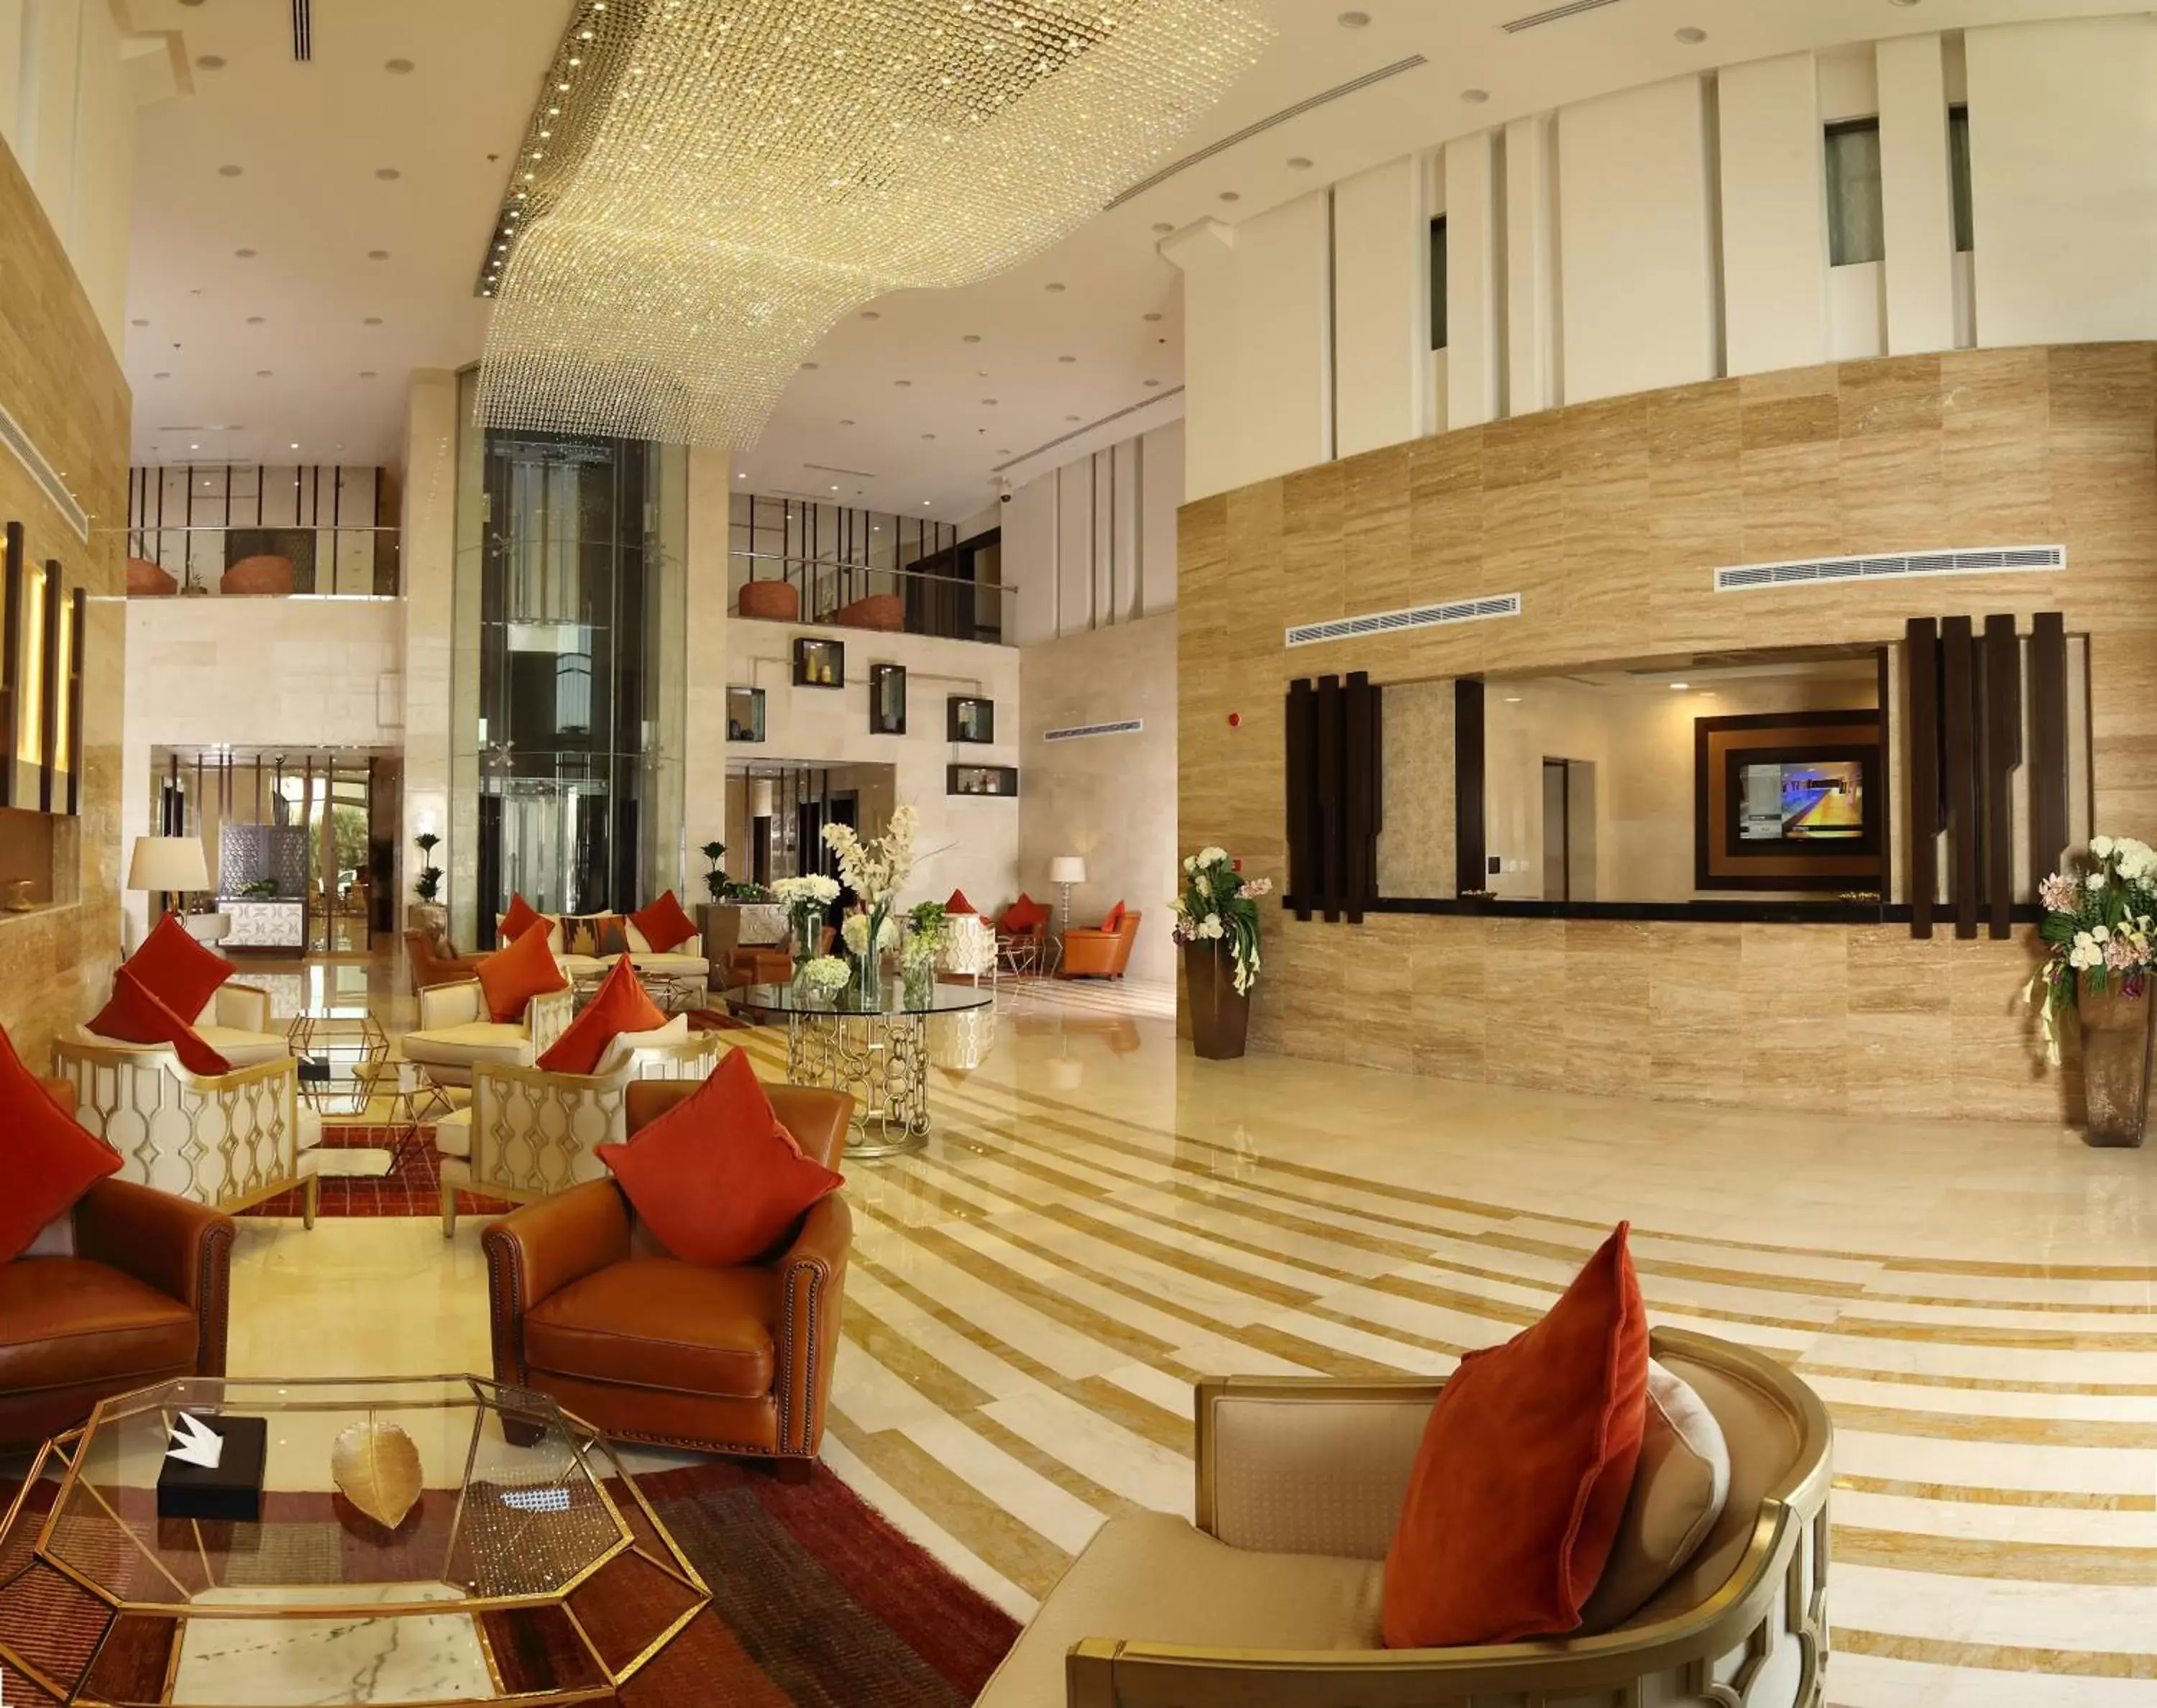 Lobby or reception, Lobby/Reception in Best Western Plus Fursan